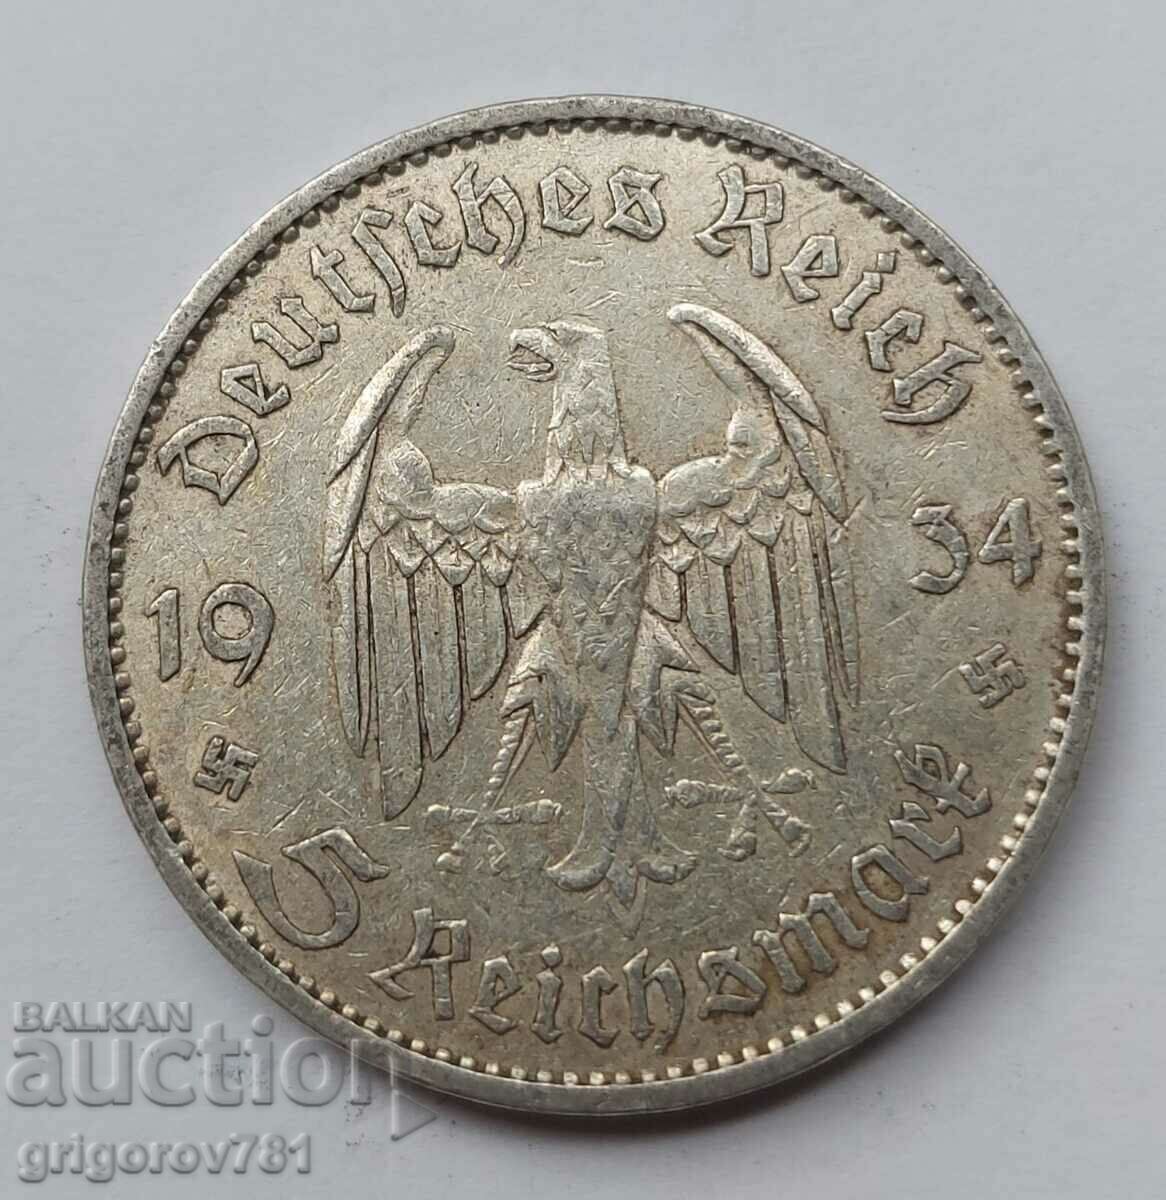 5 mărci de argint Germania 1934 A III Reich Monedă de argint #9